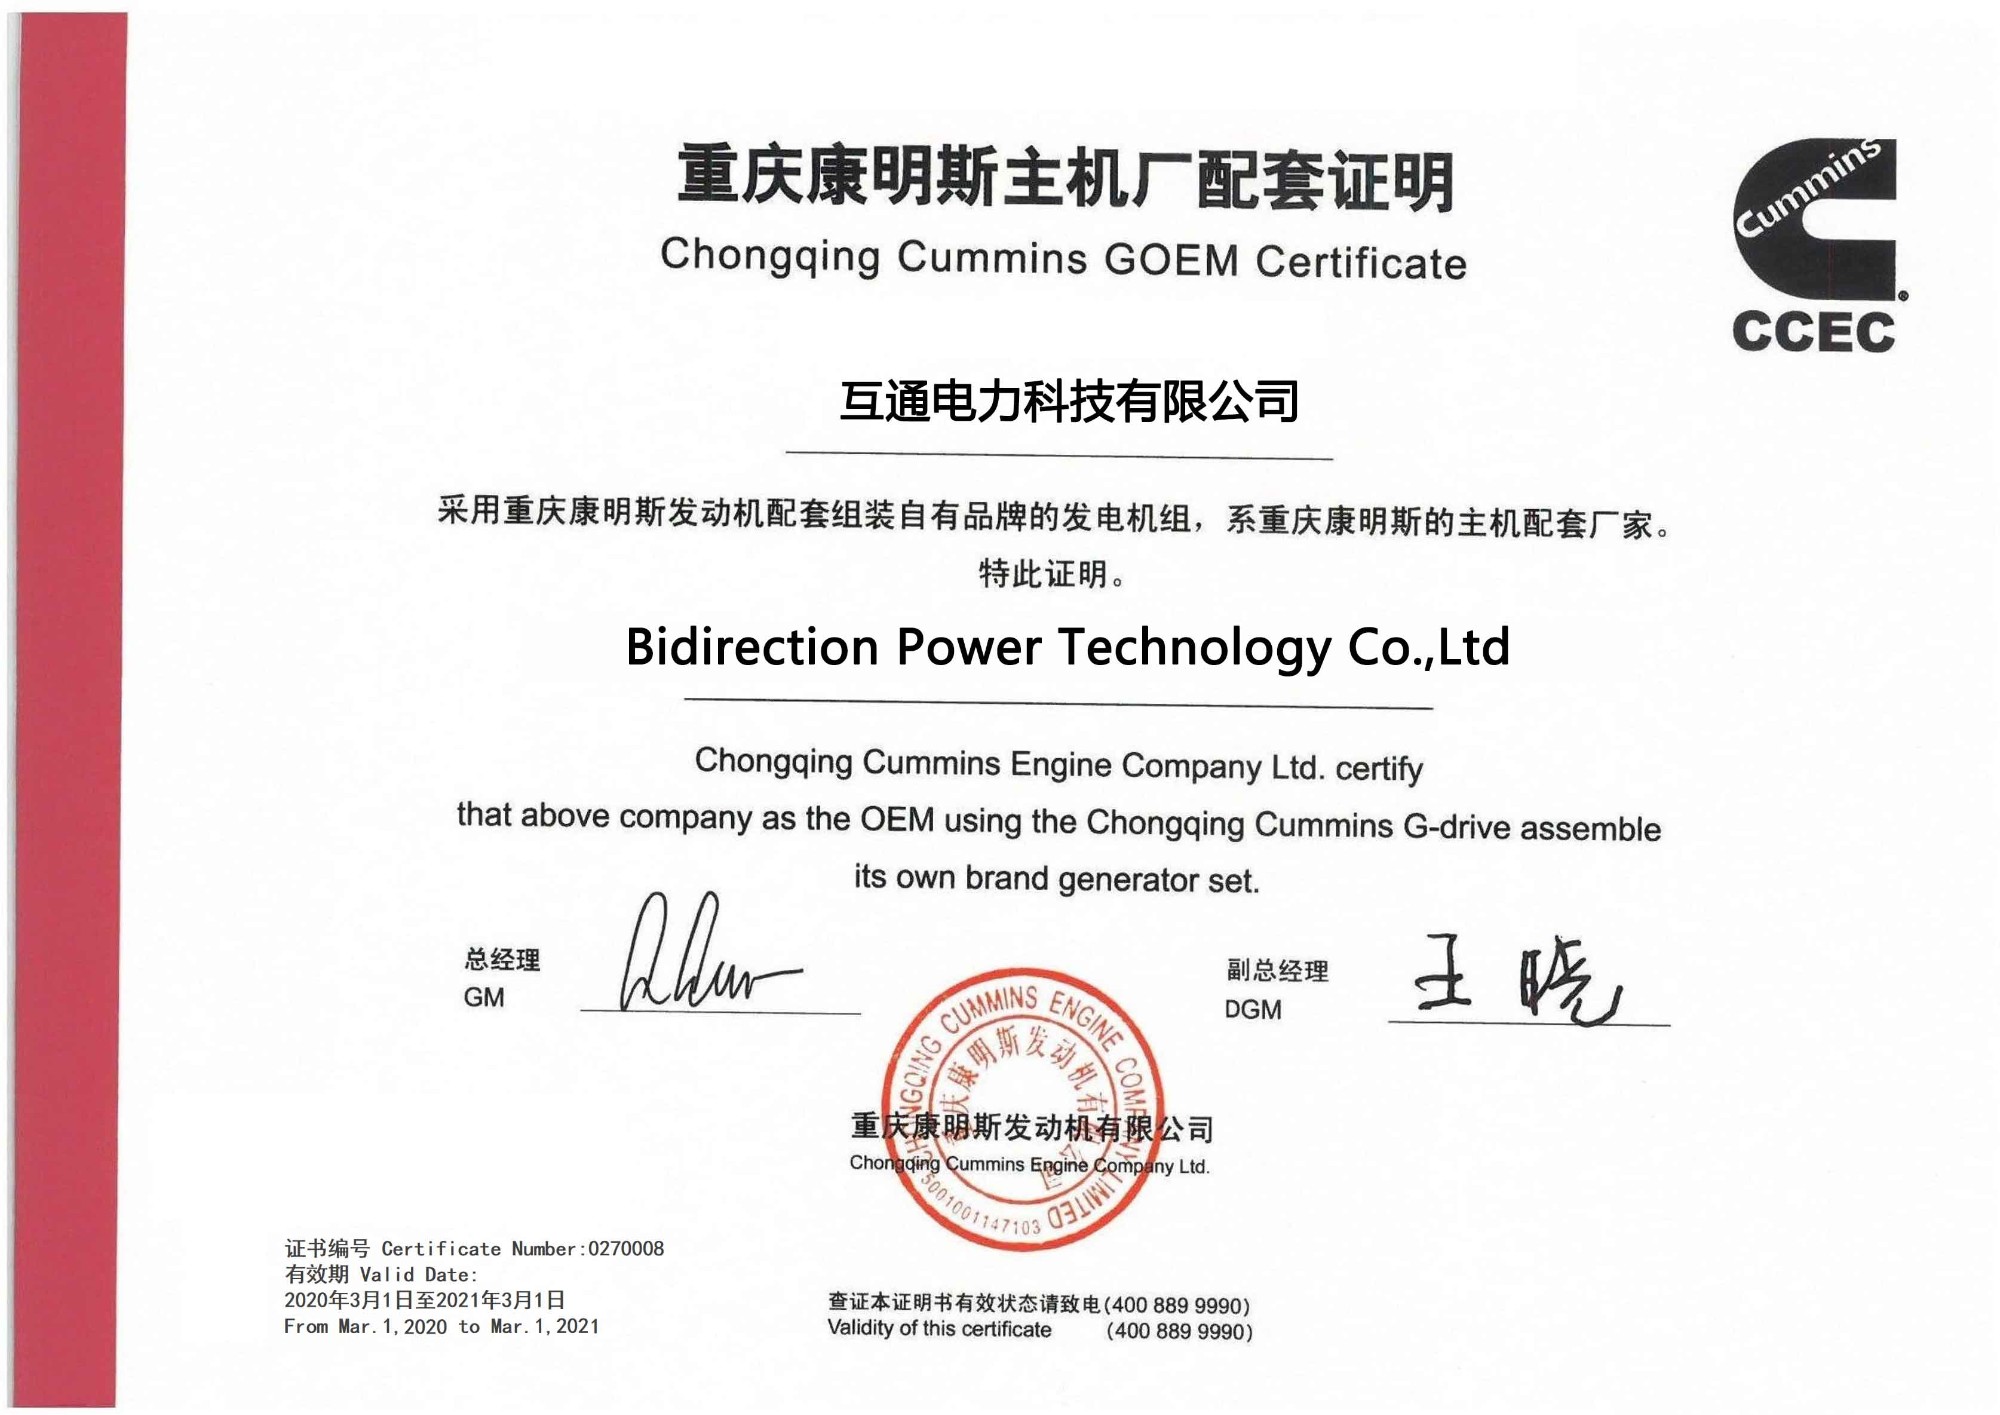 شركة Bidirection Power Technology Co. ، Ltd مرخصة من قبل Chongqing Cummins GOEM Certificate